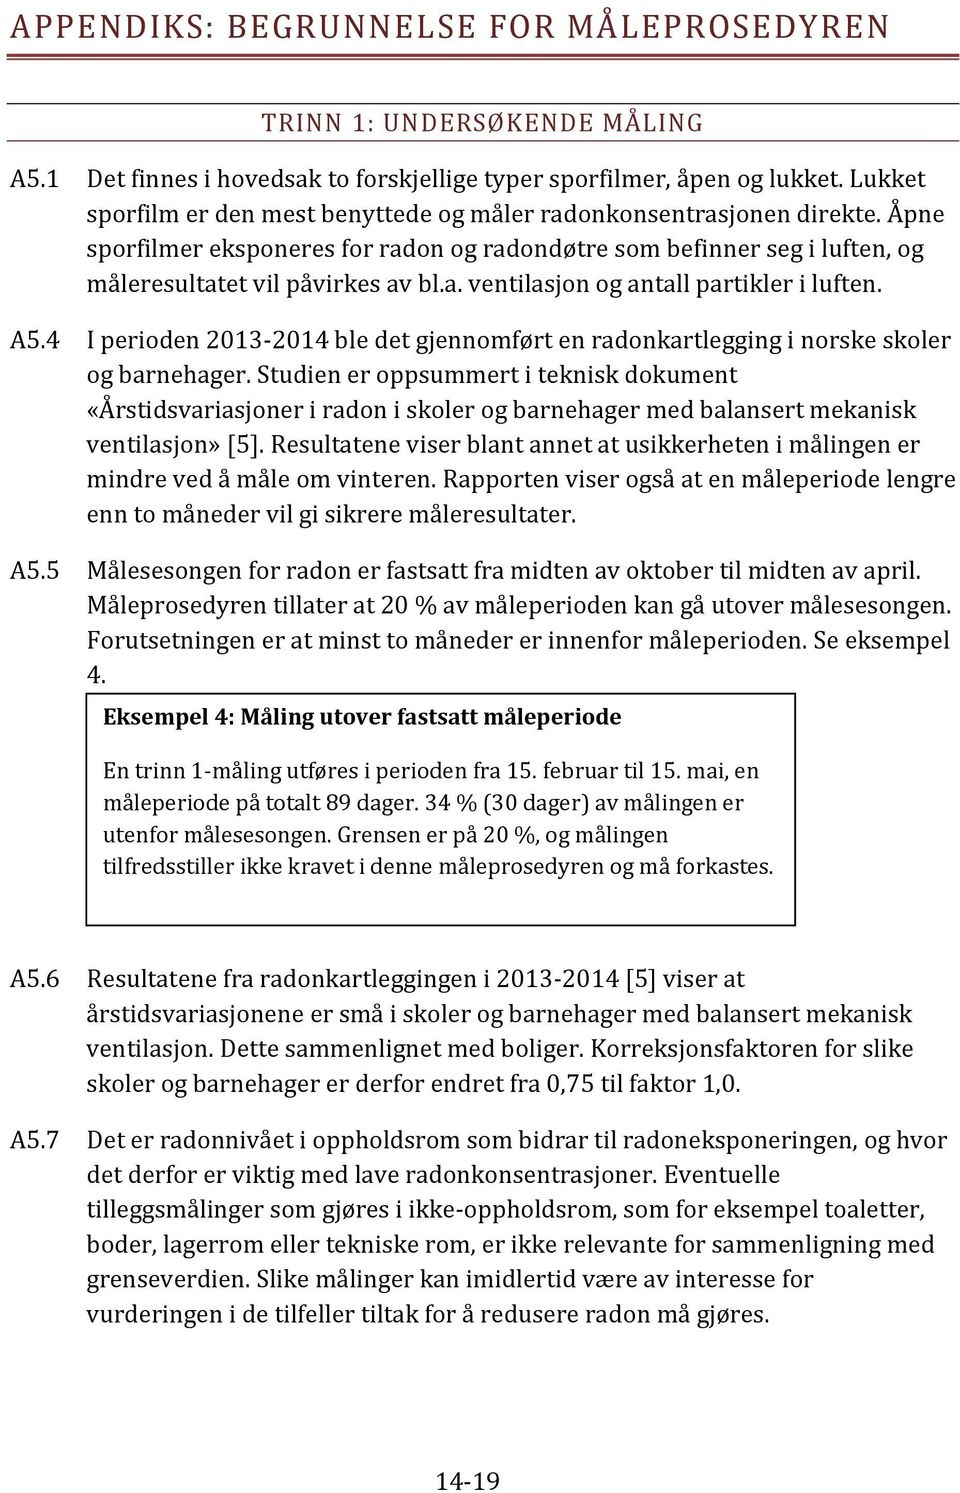 A5.4 I perioden 2013-2014 ble det gjennomført en radonkartlegging i norske skoler og barnehager.